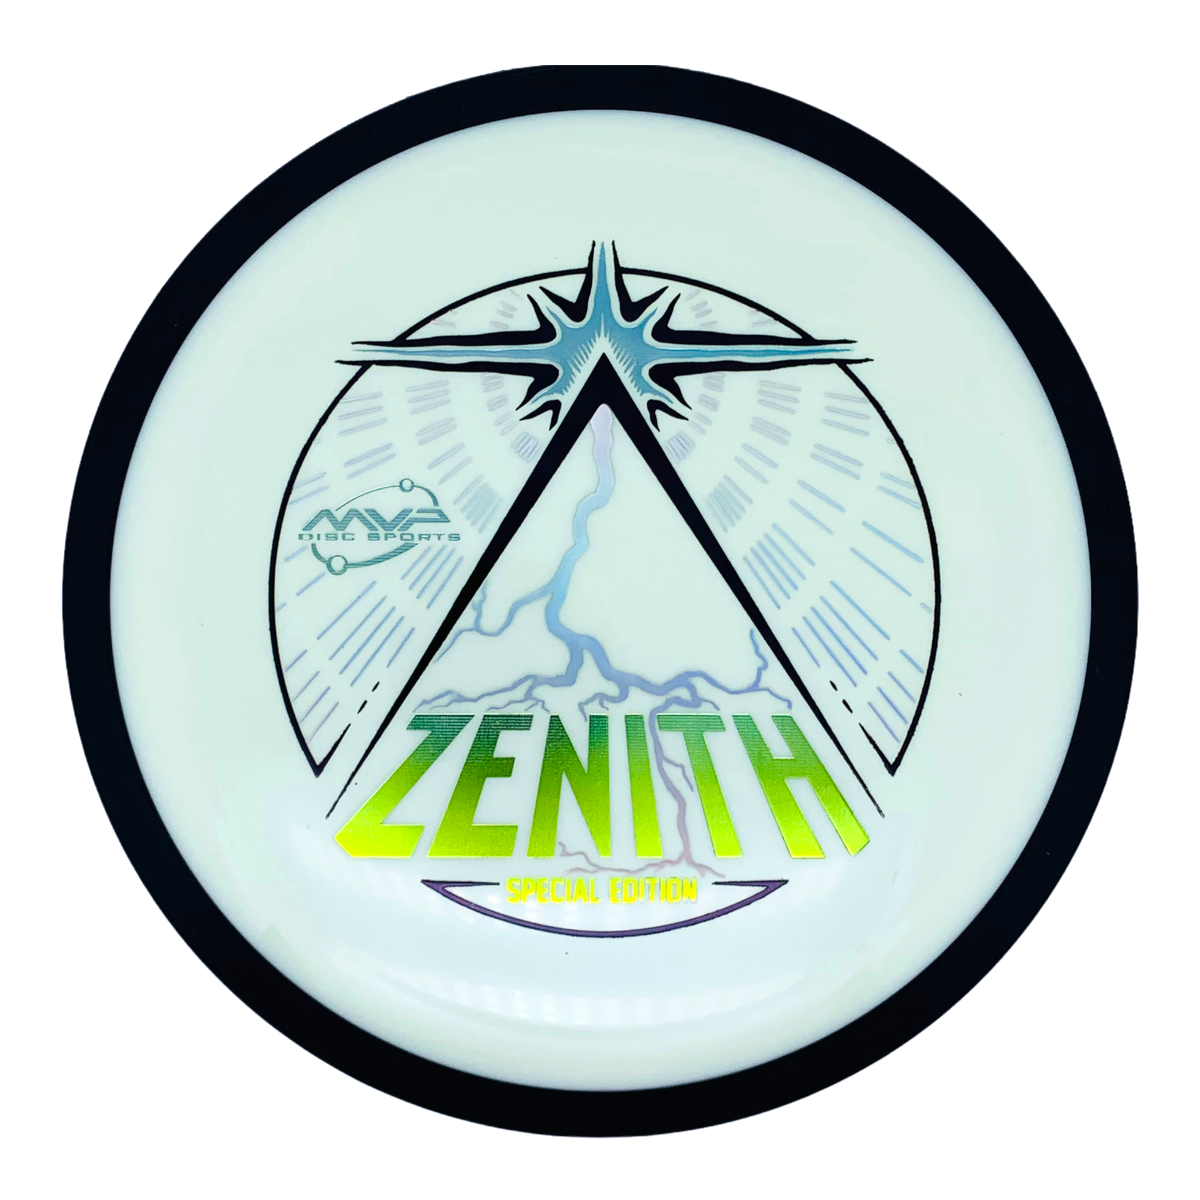 MVP Neutron Zenith SE